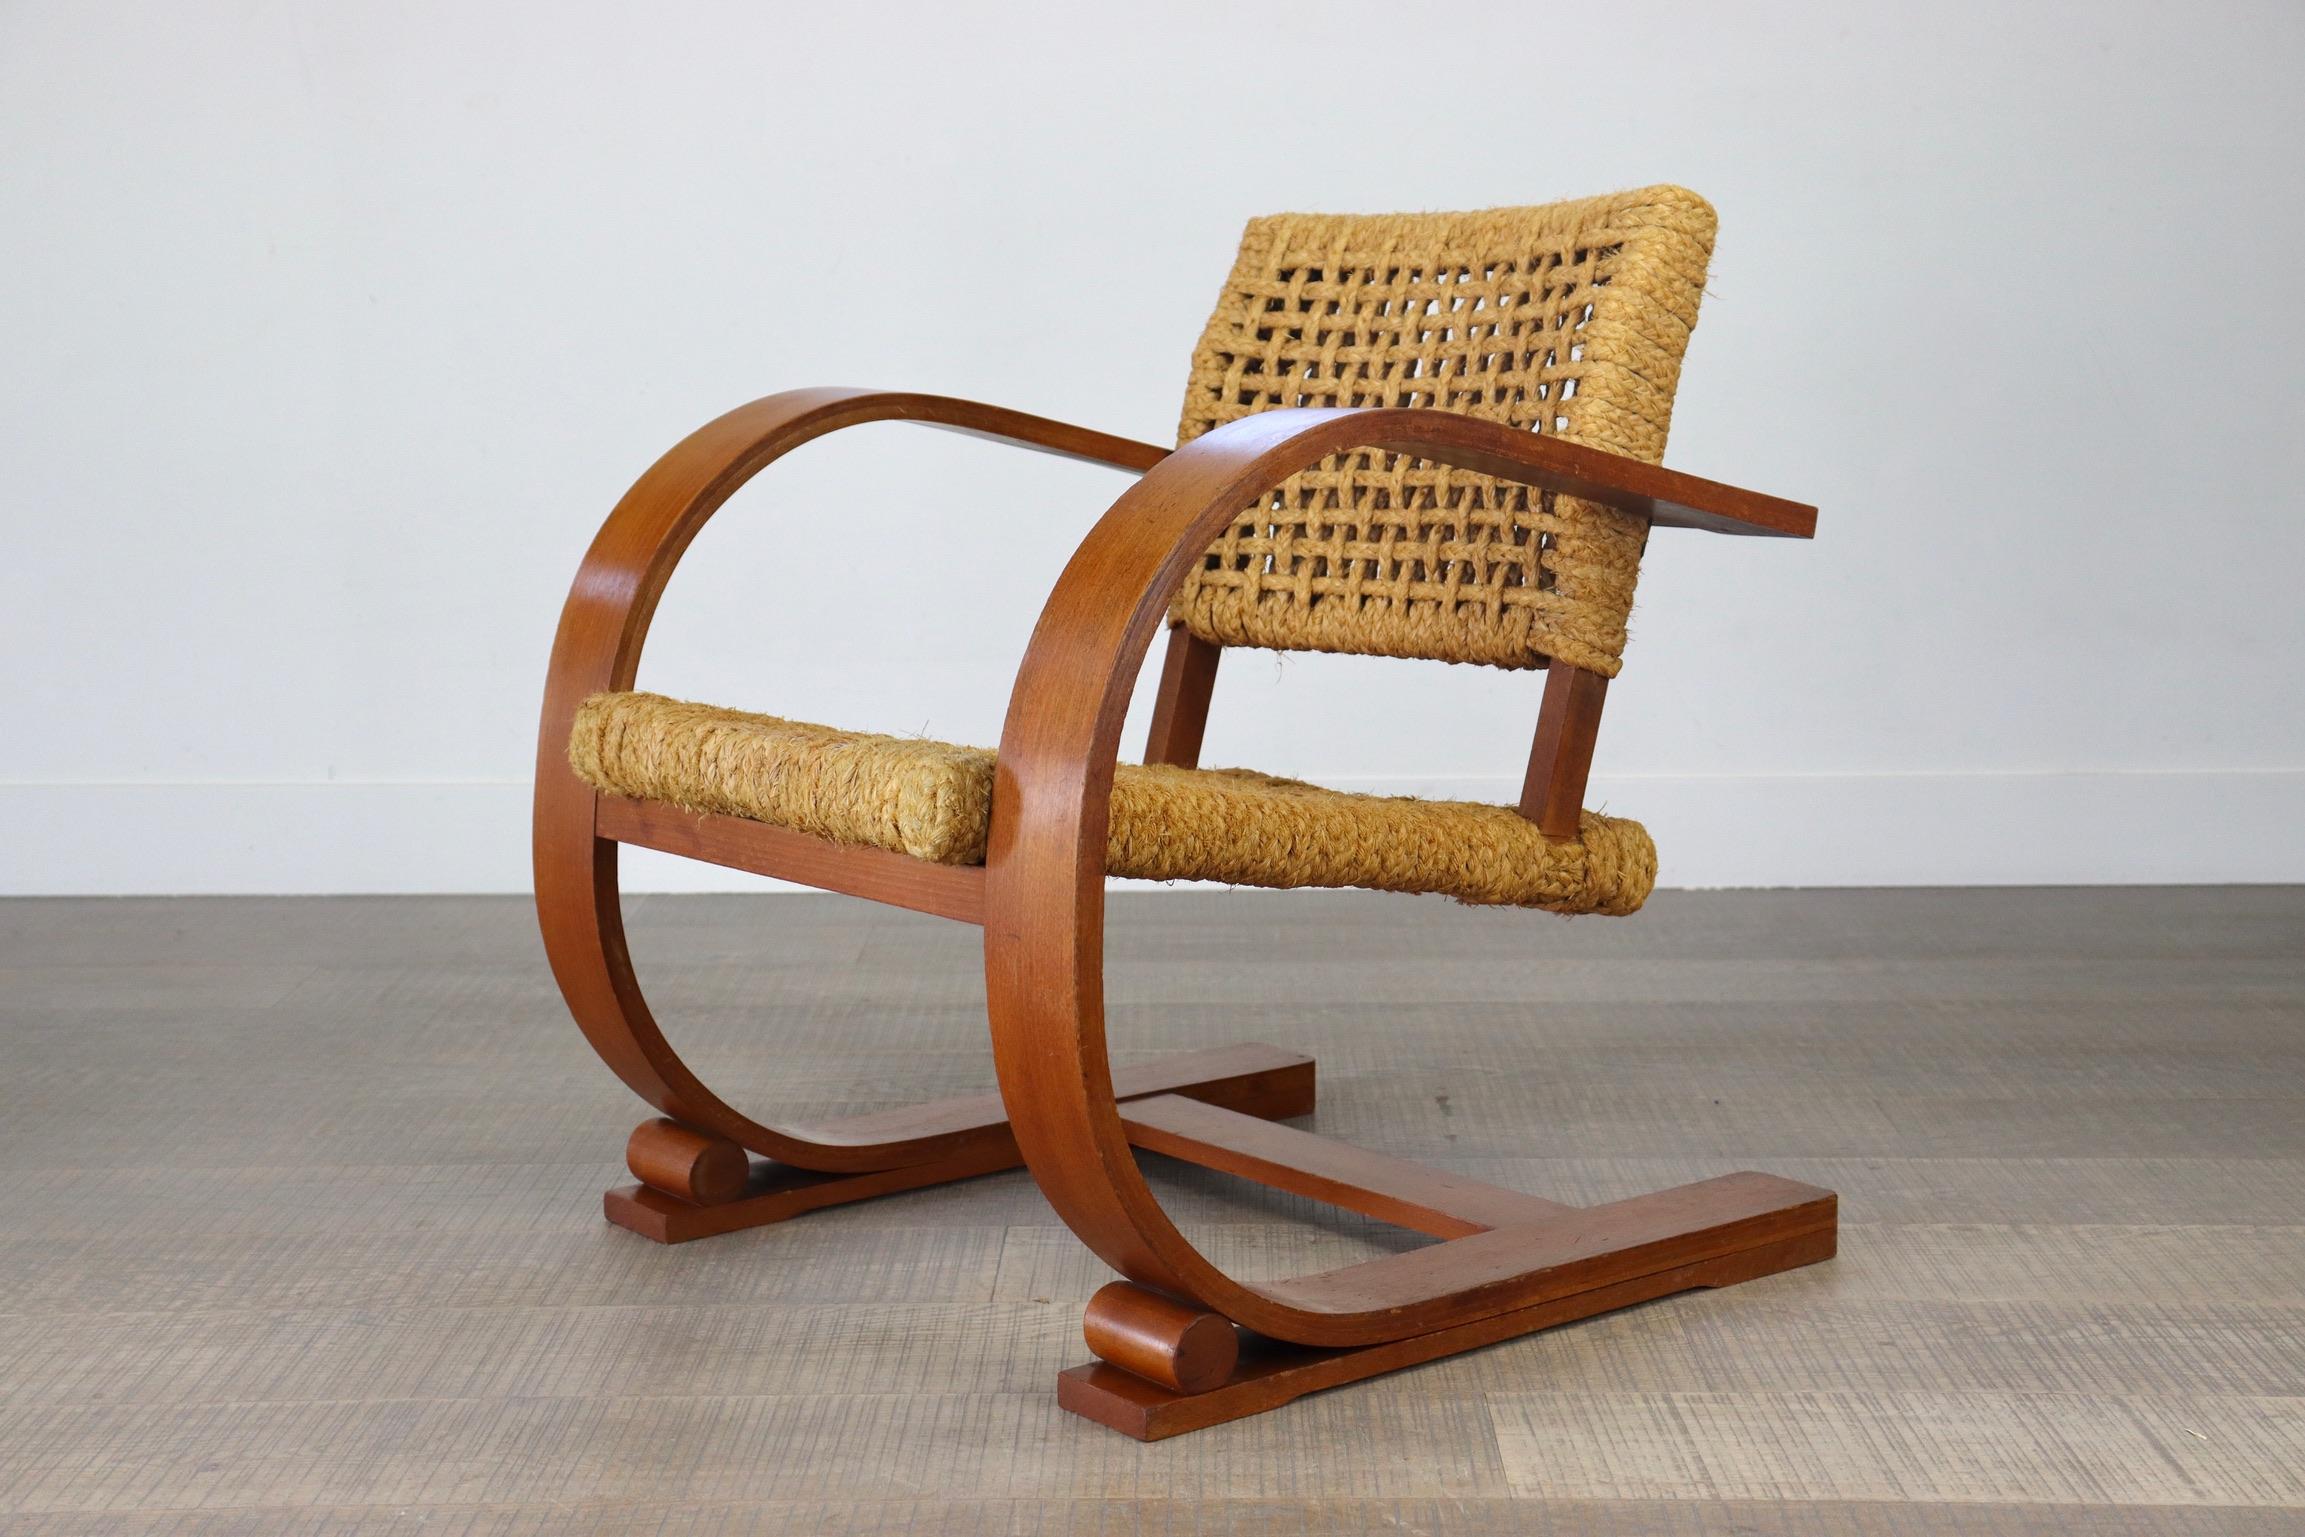 Superbe chaise longue française par Adrien Audoux et Frida Minet. Les designers français étaient attachés à une éthique du design basée sur des matériaux accessibles comme moyen de servir la vie moderne. En réaction à l'Exposition des Arts